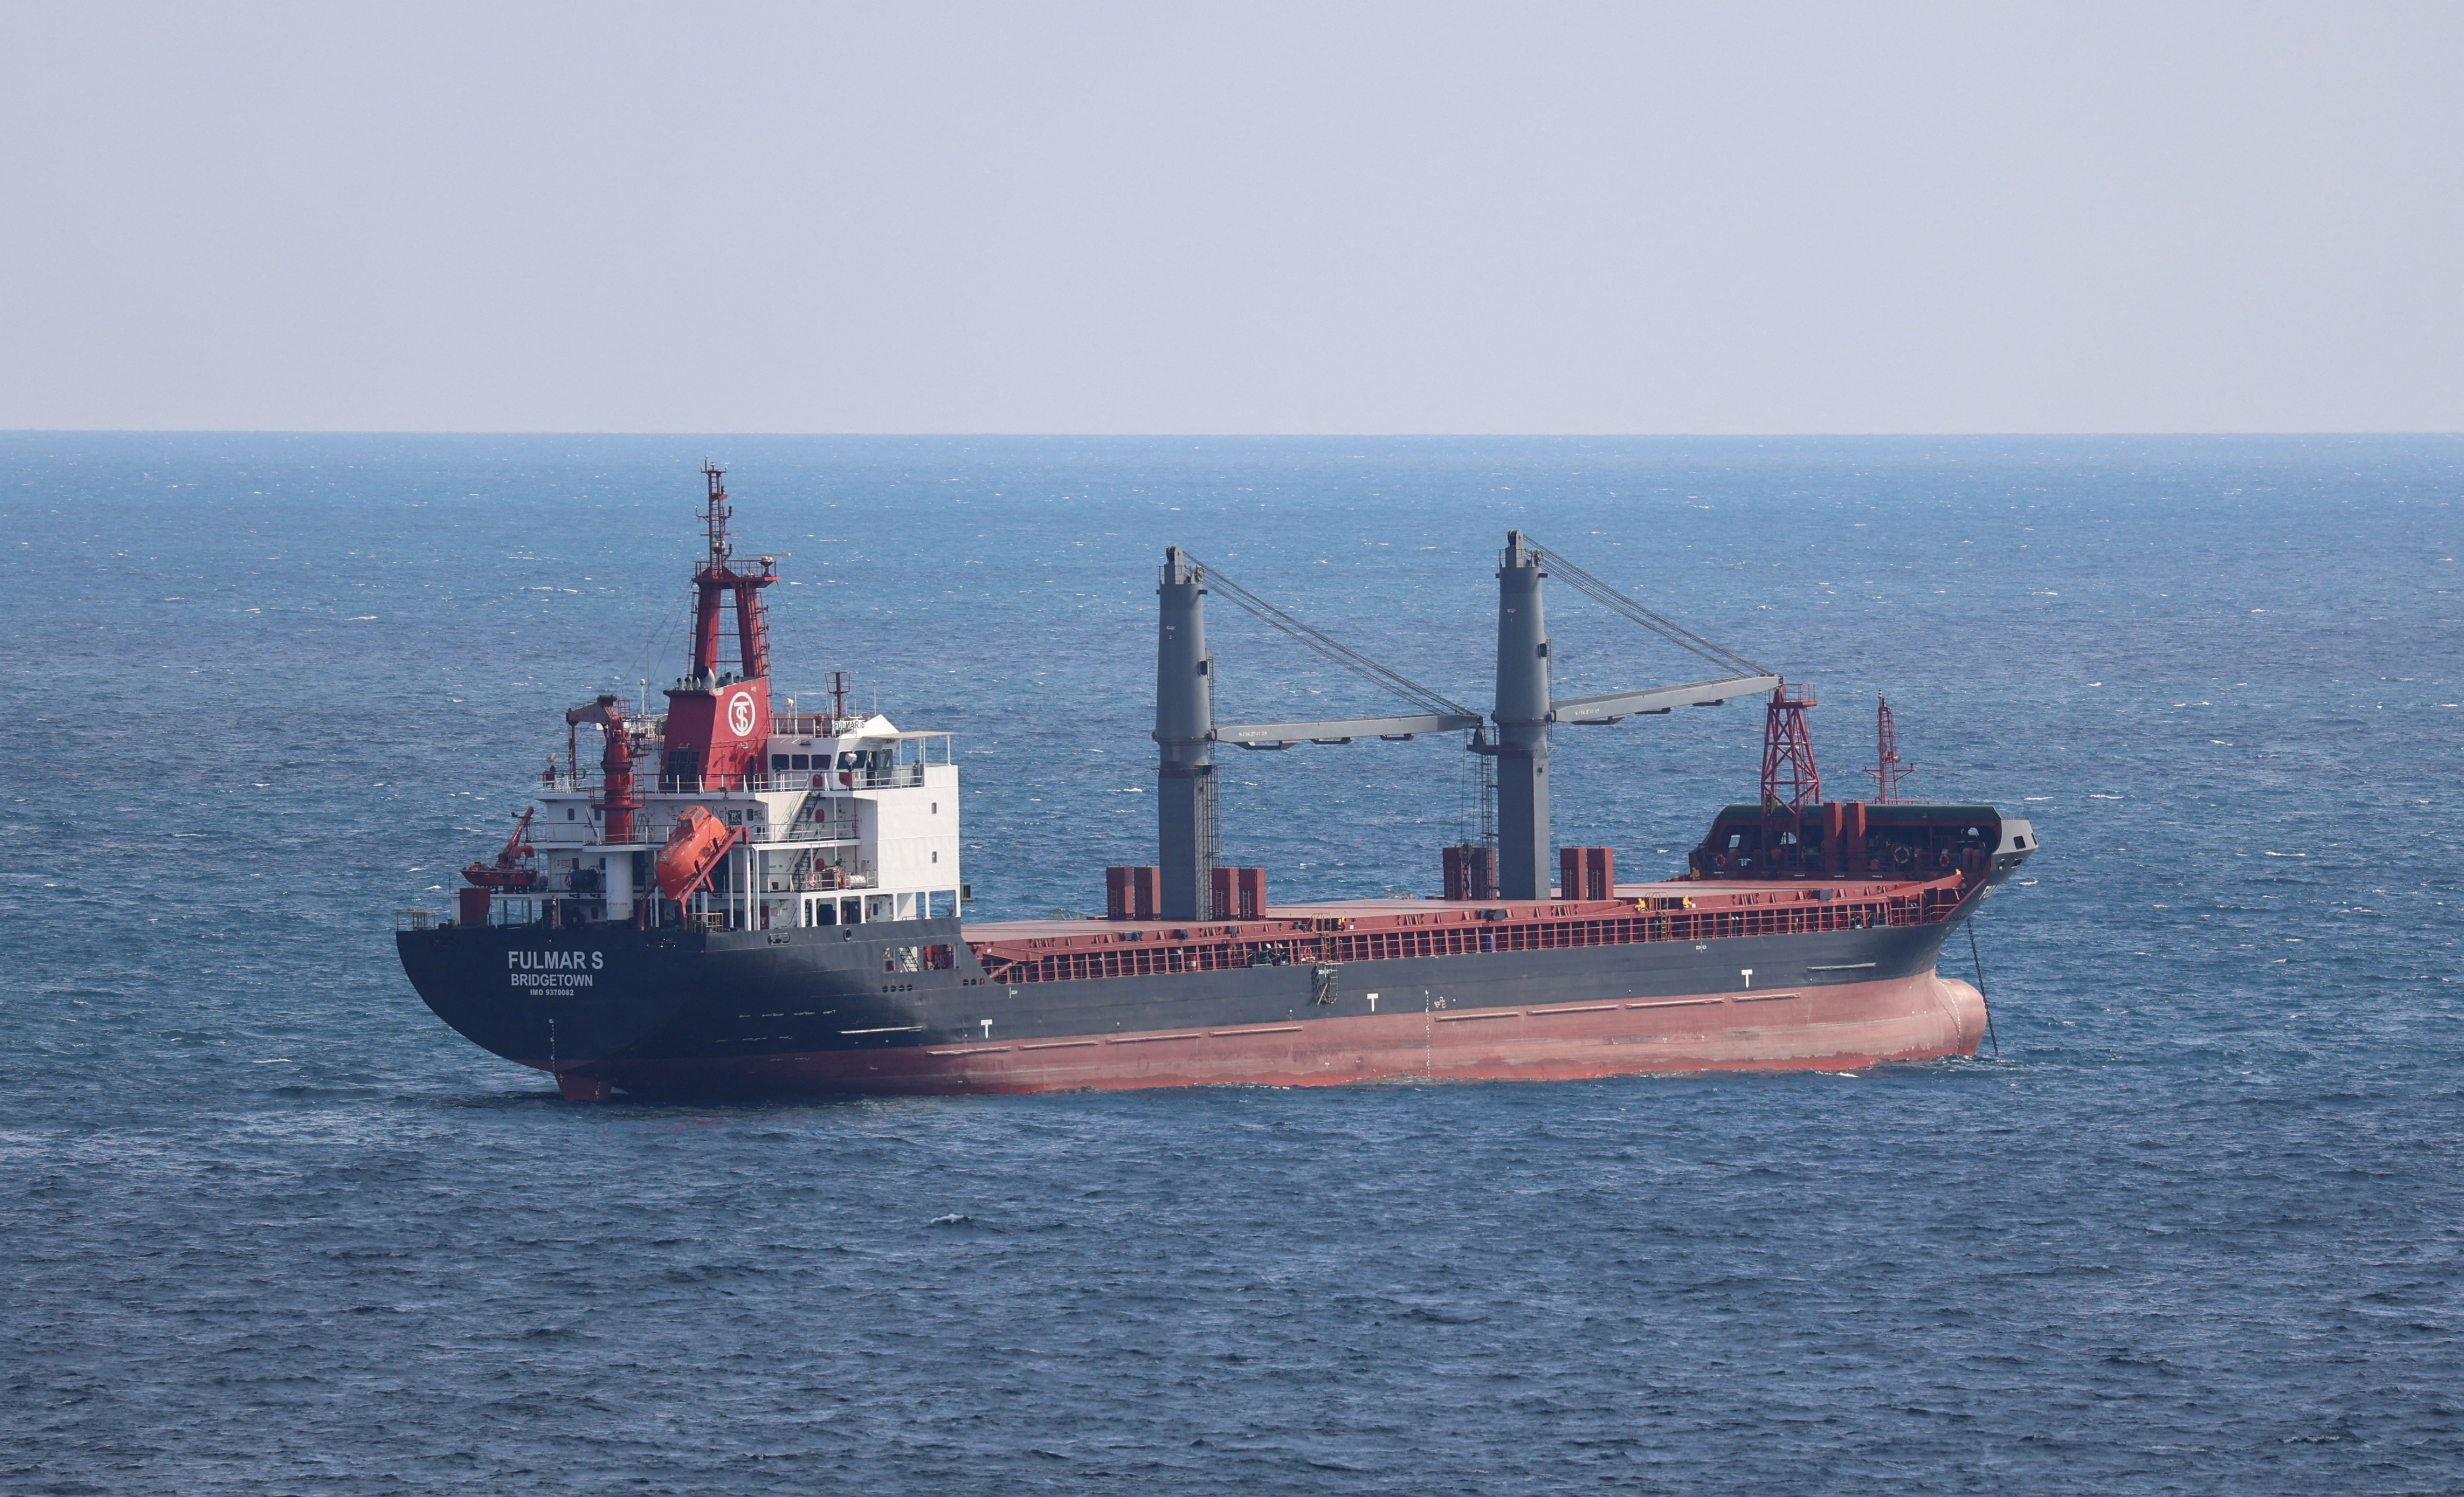 El buque de carga general Fulmar S, de bandera de Barbados, es fotografiado en el Mar Negro, al norte del estrecho del Bósforo, en Estambul, Turquía, el 5 de agosto de 2022. REUTERS/Yoruk Isik